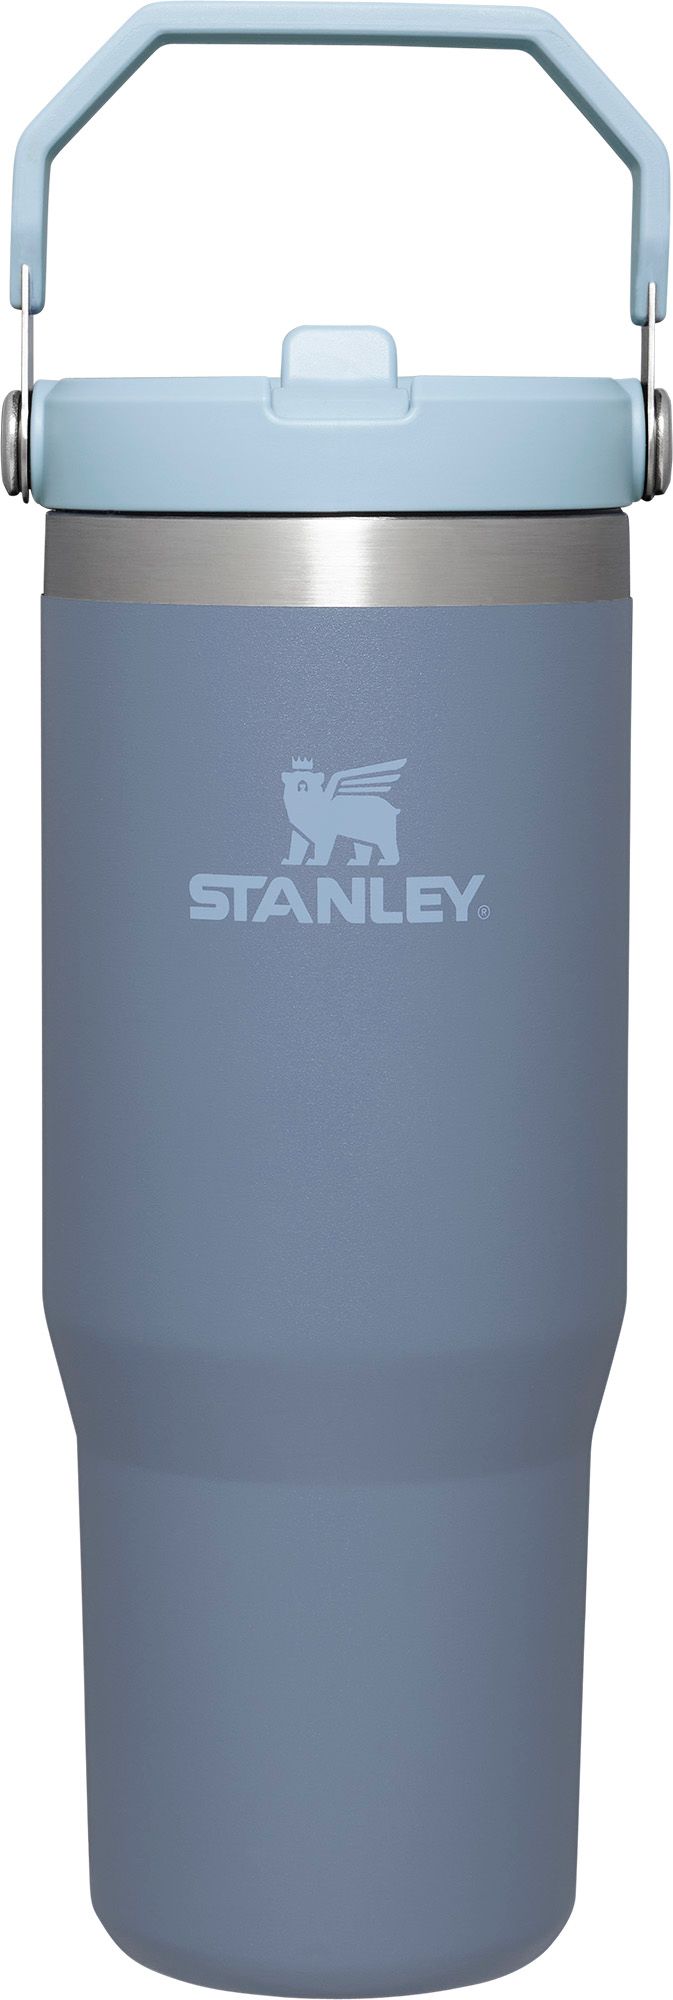 YETI Rambler Bucket , One Fancy Ice Bucket — Ohio Outside